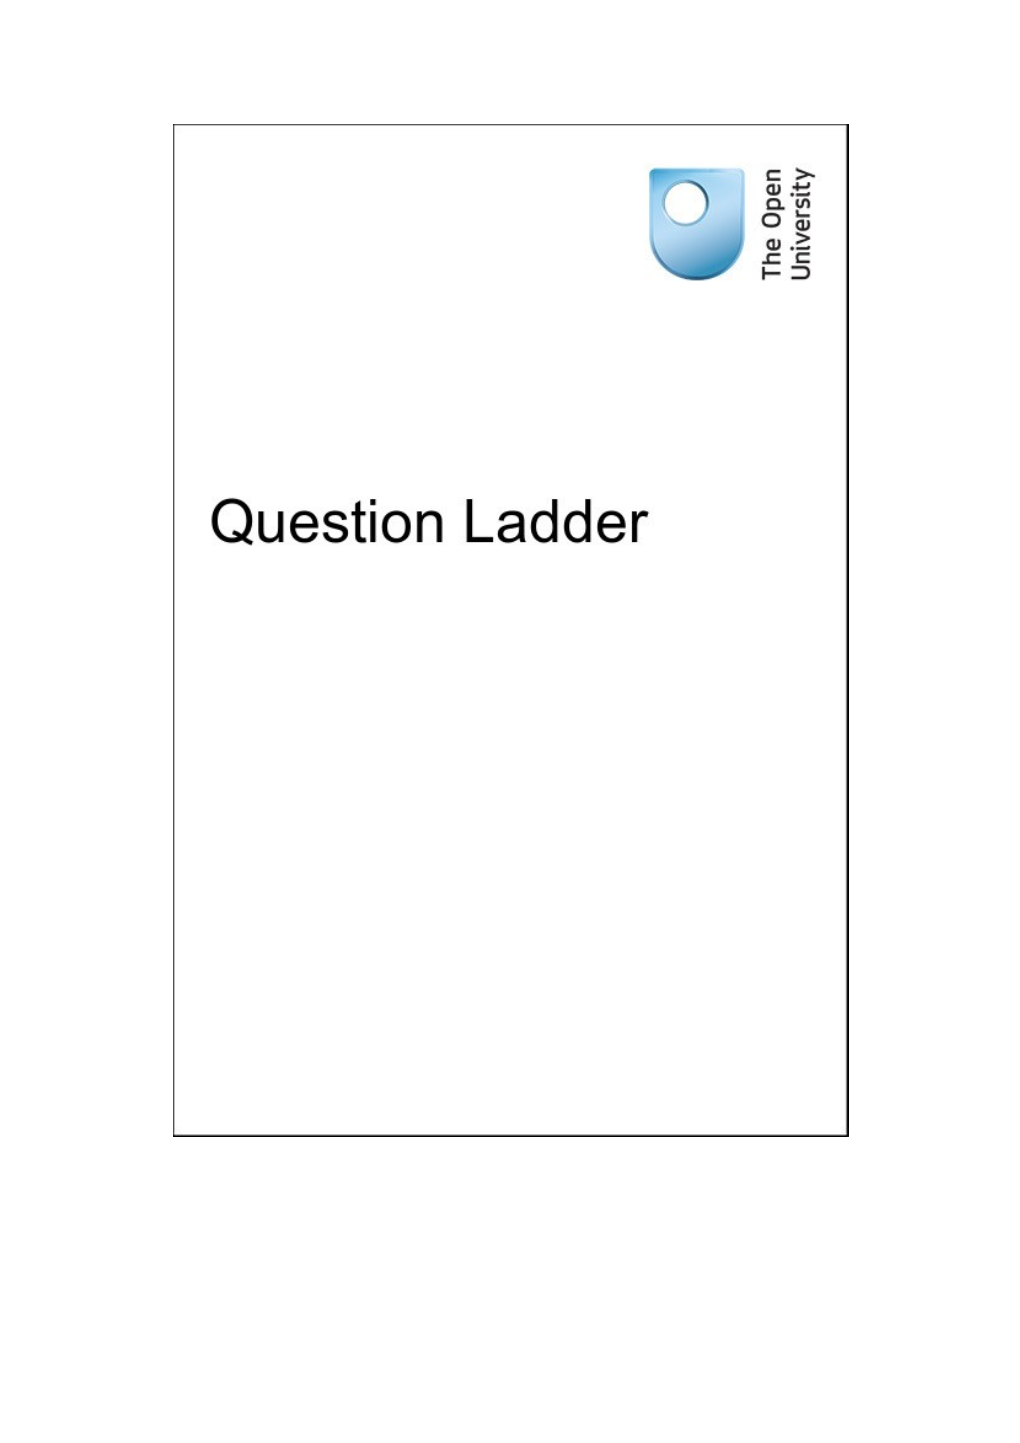 DIY-Learn-Question-Ladderdiylearn